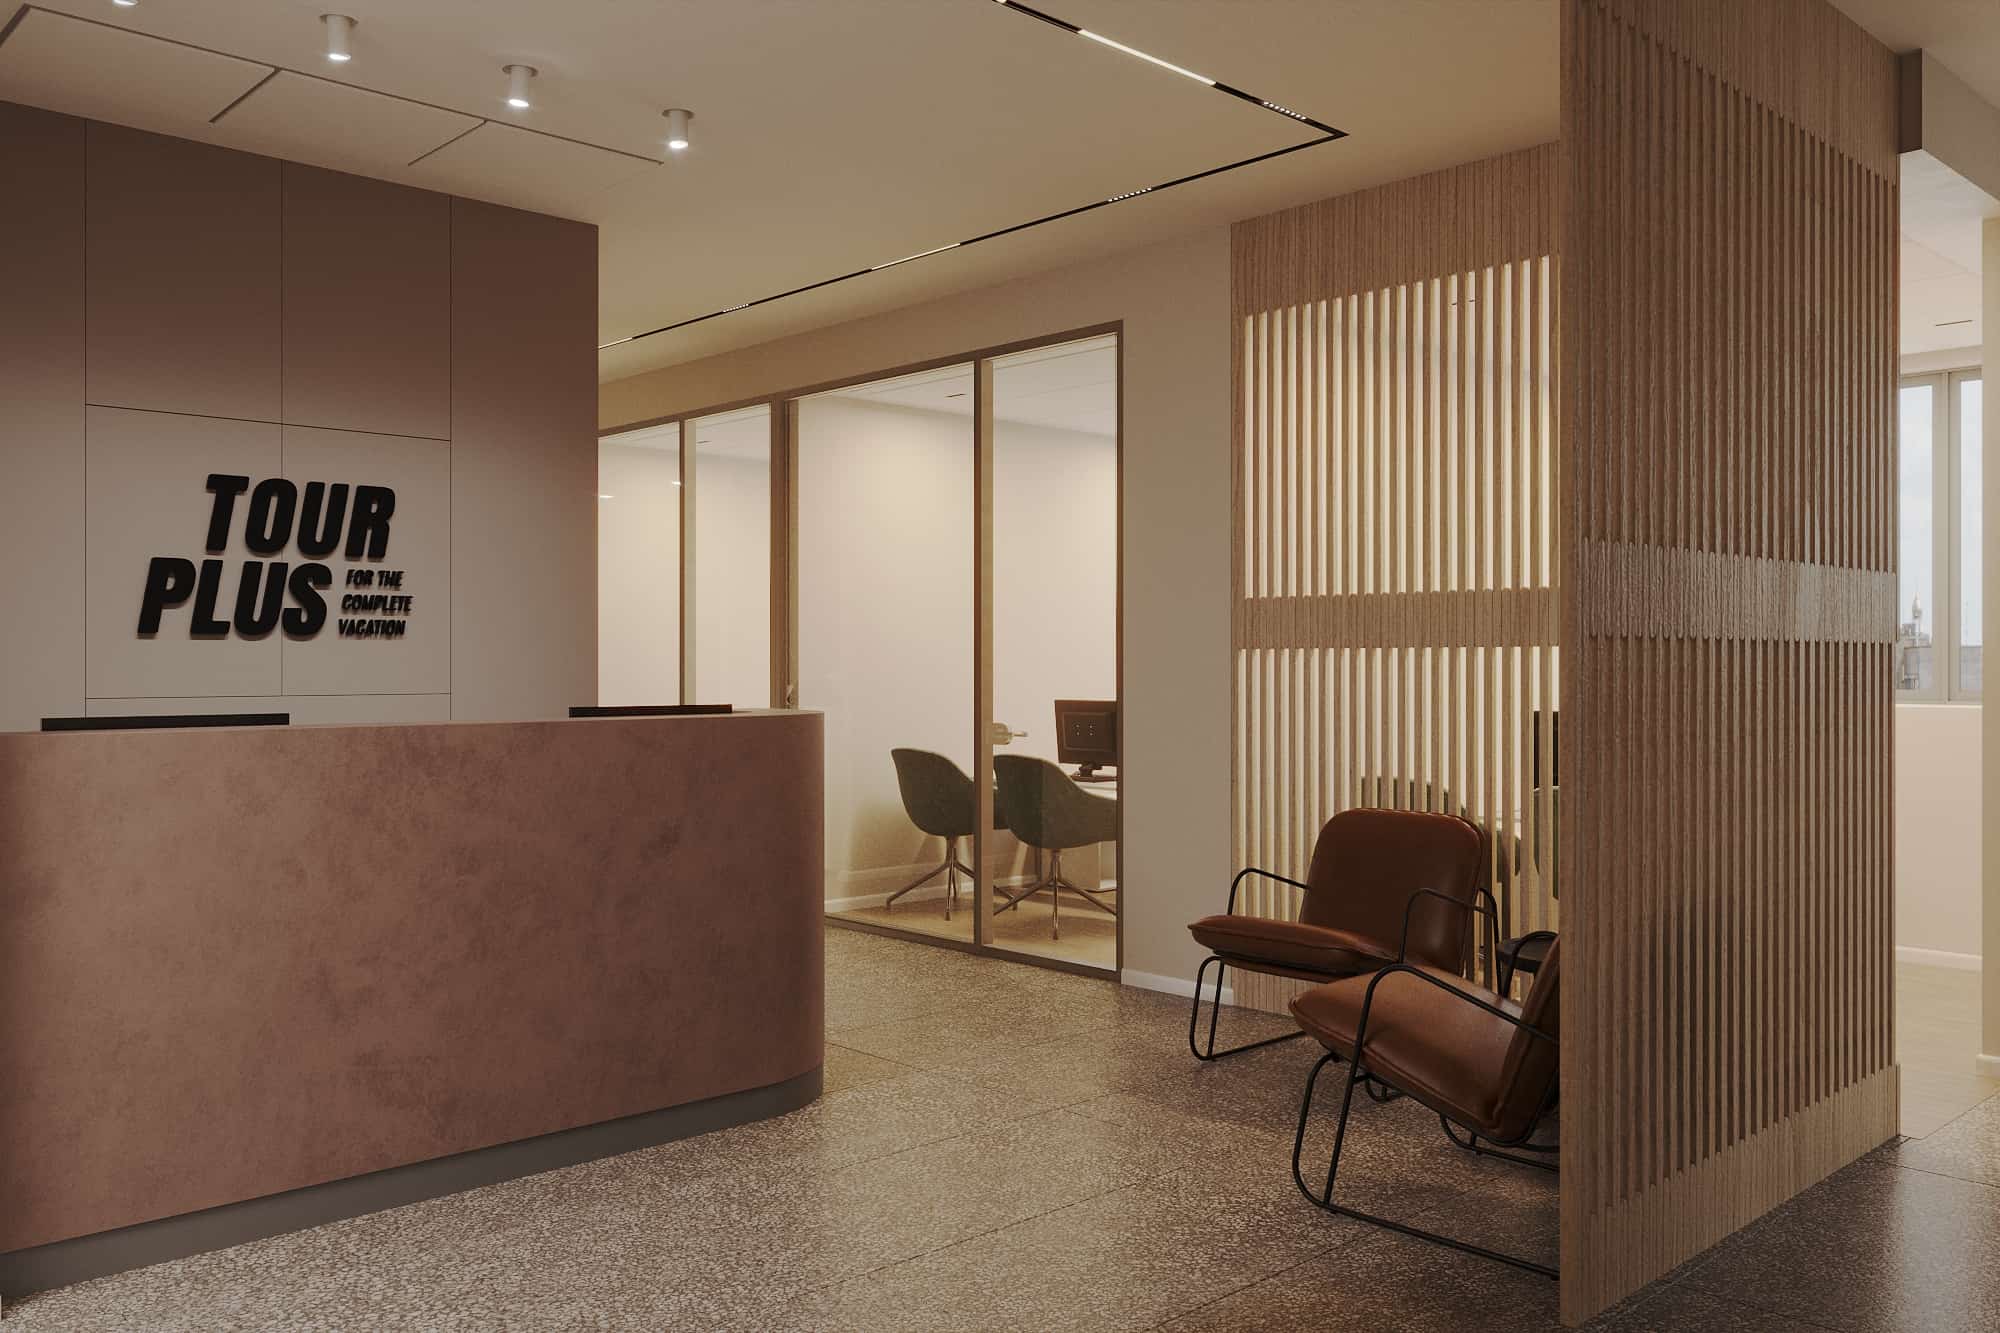 משרדי חברת תור פלוס תיירות - אדריכלות עיצוב פנים ועיצוב תאורה